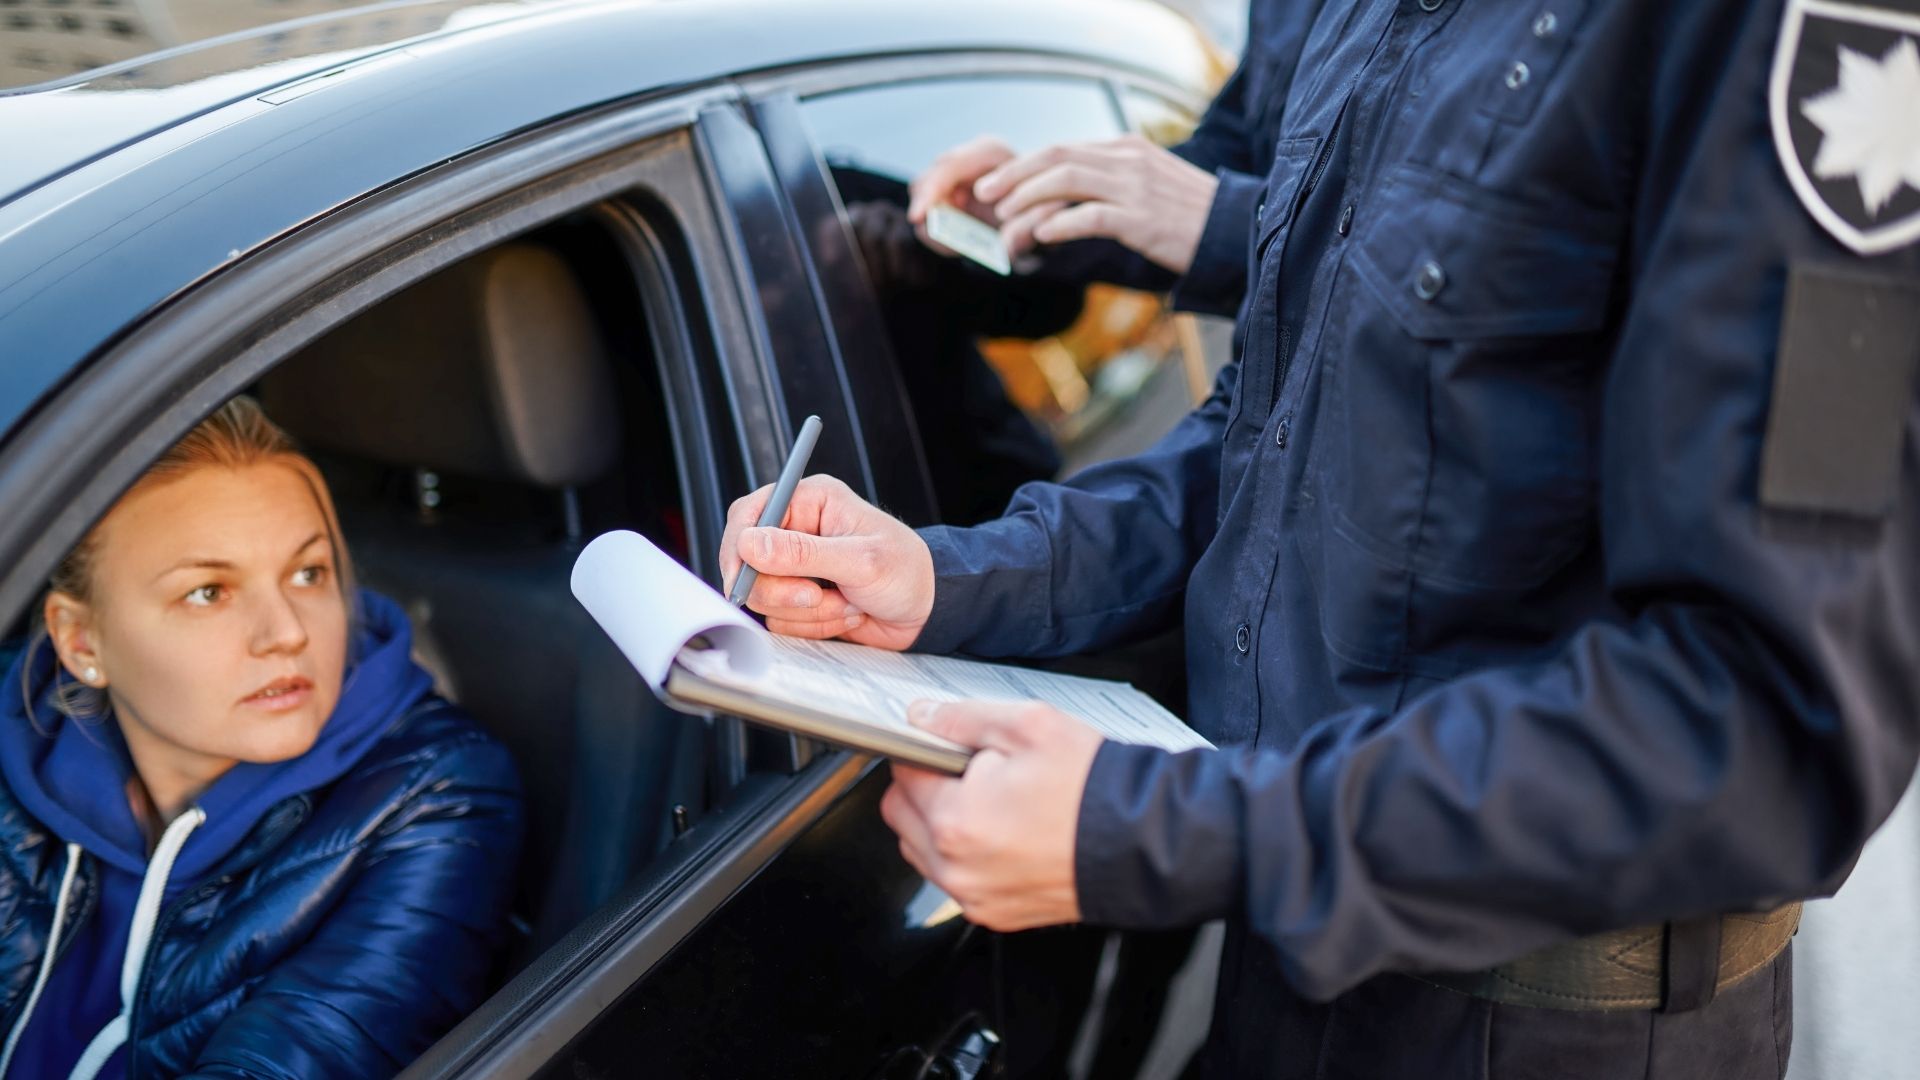 en politimann gir en sjåfør en bot - Forsidebilde på Beslag av førerkort